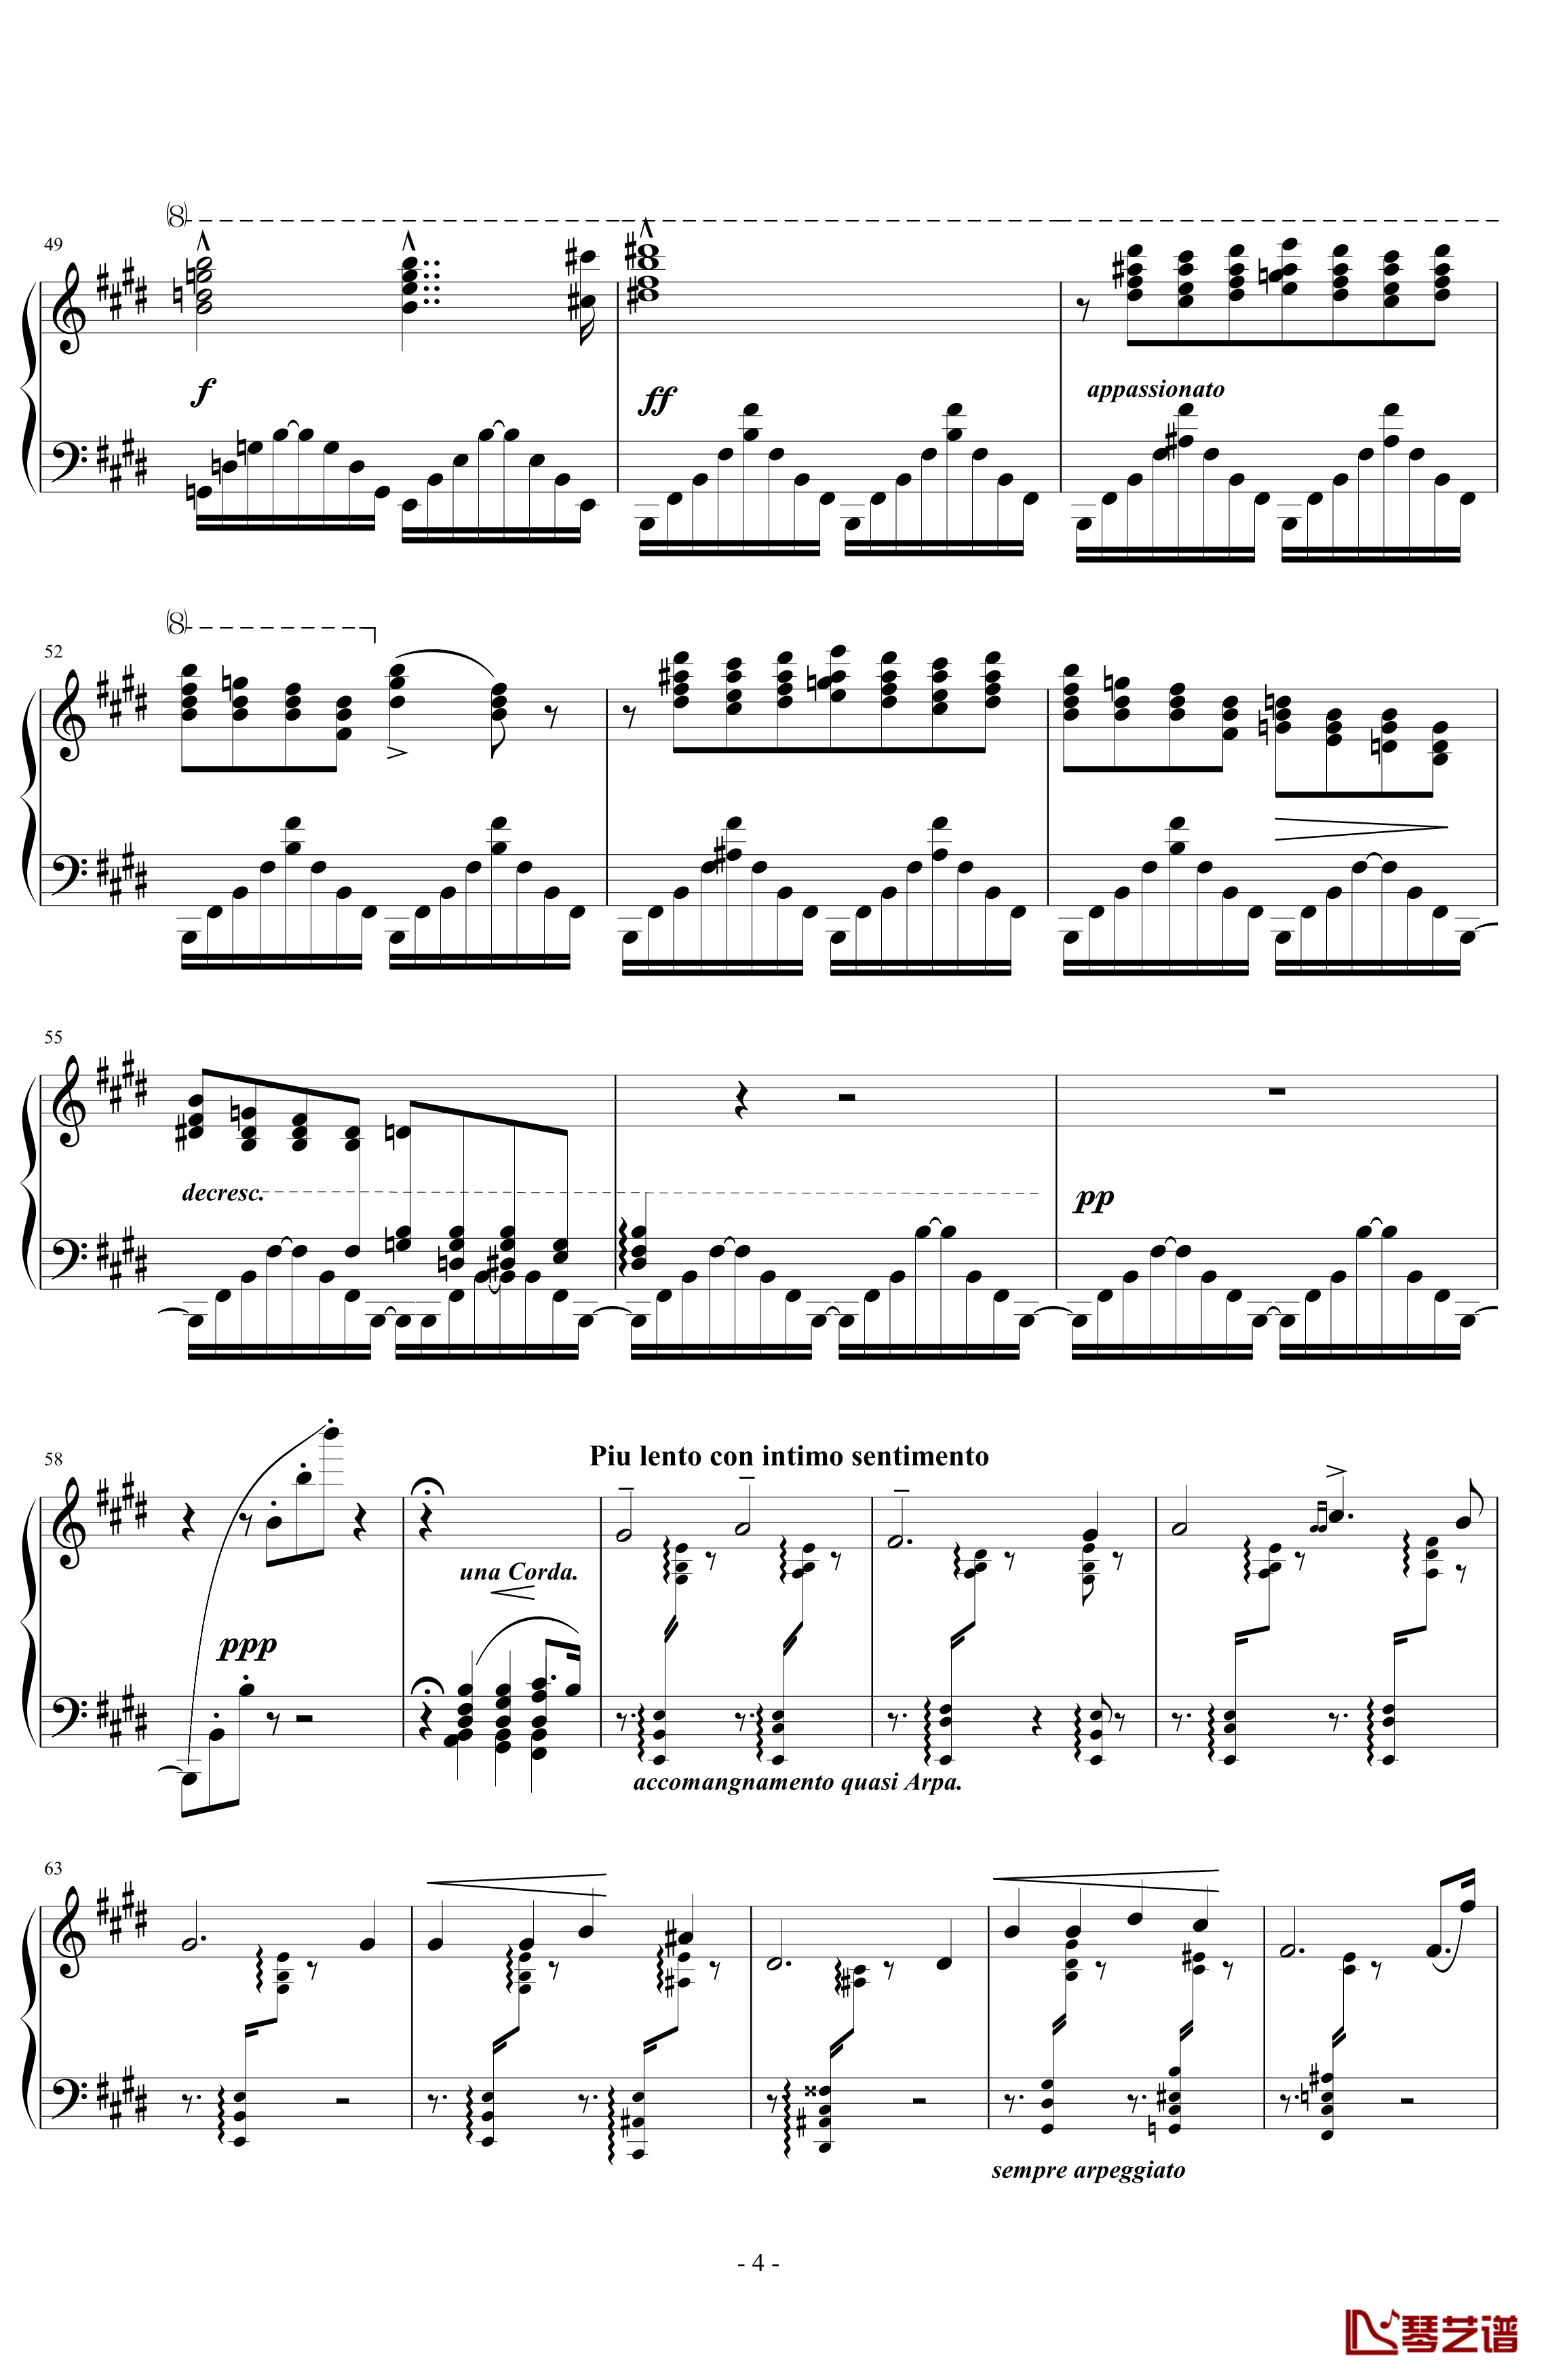 超技练习曲第11号钢琴谱-夜之和谐-李斯特4